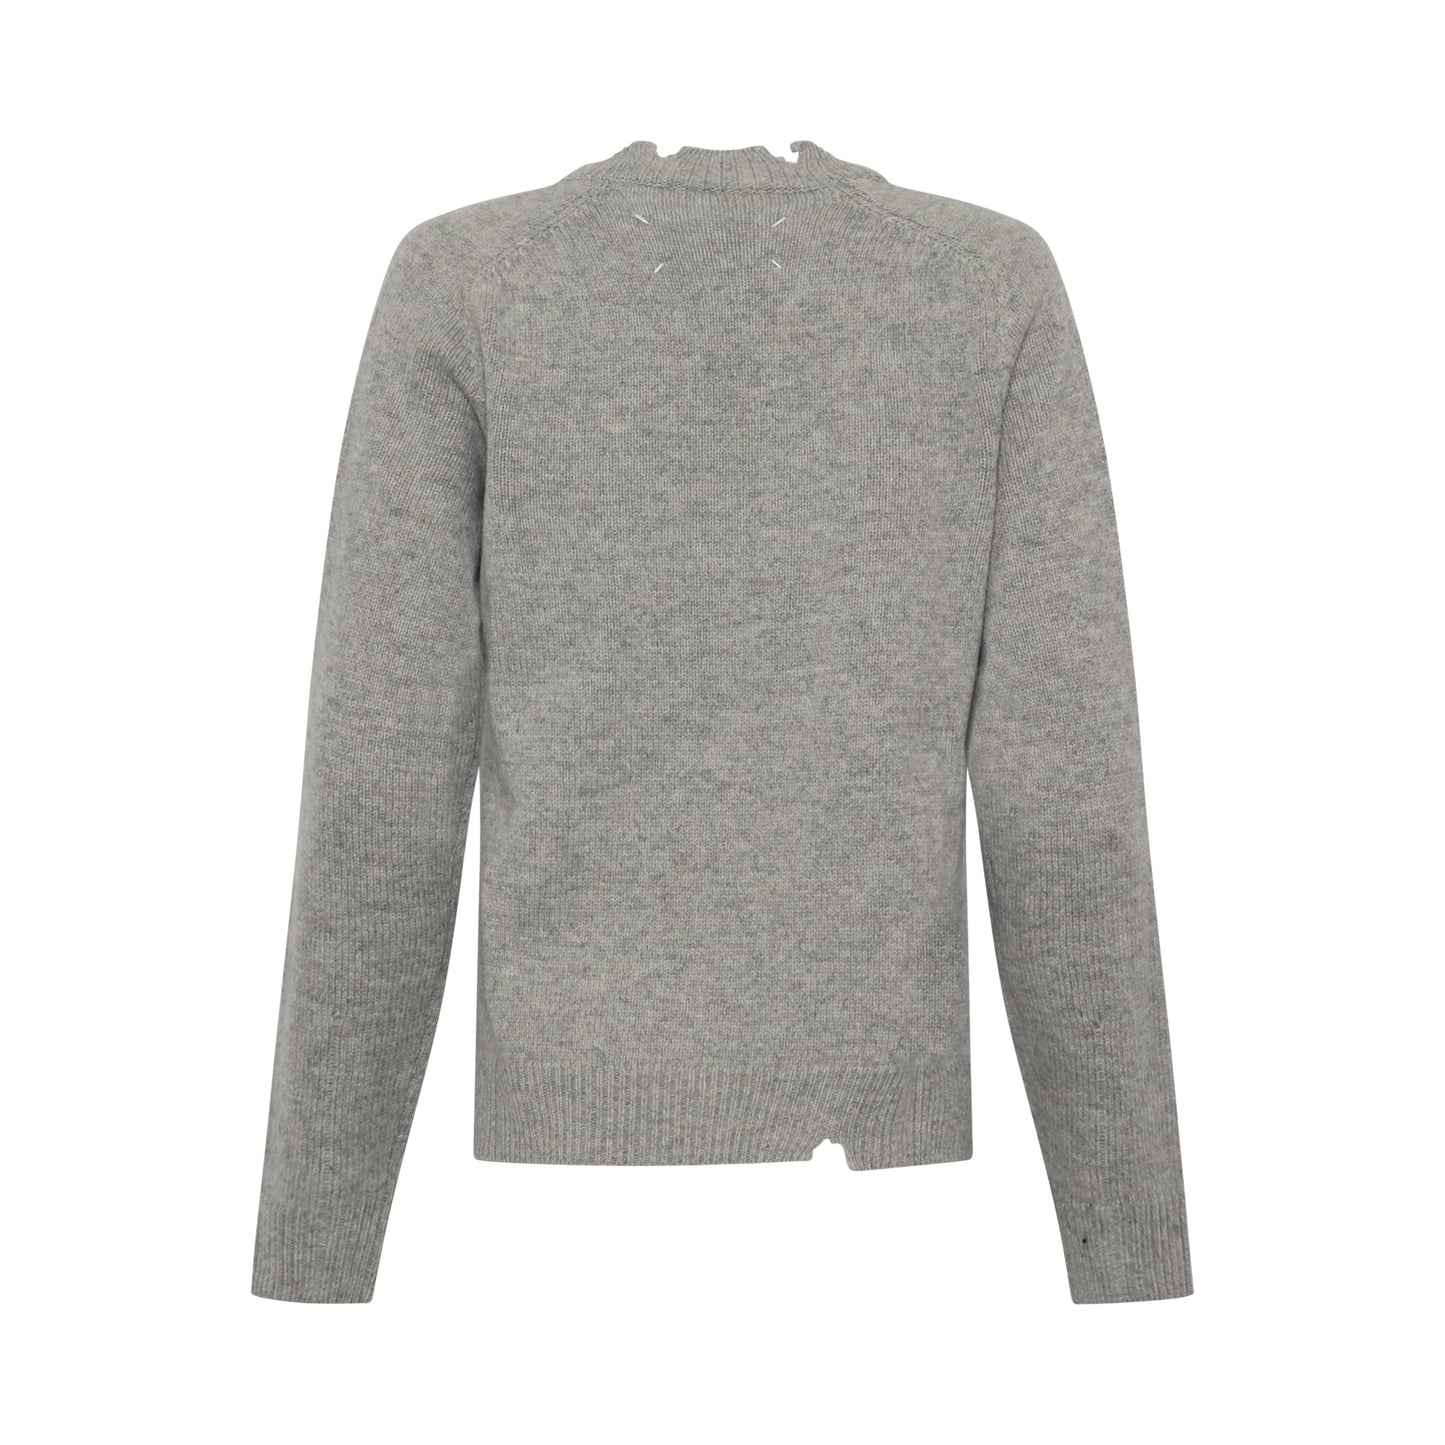 Distressed Effect Raglan Sweater in Grey